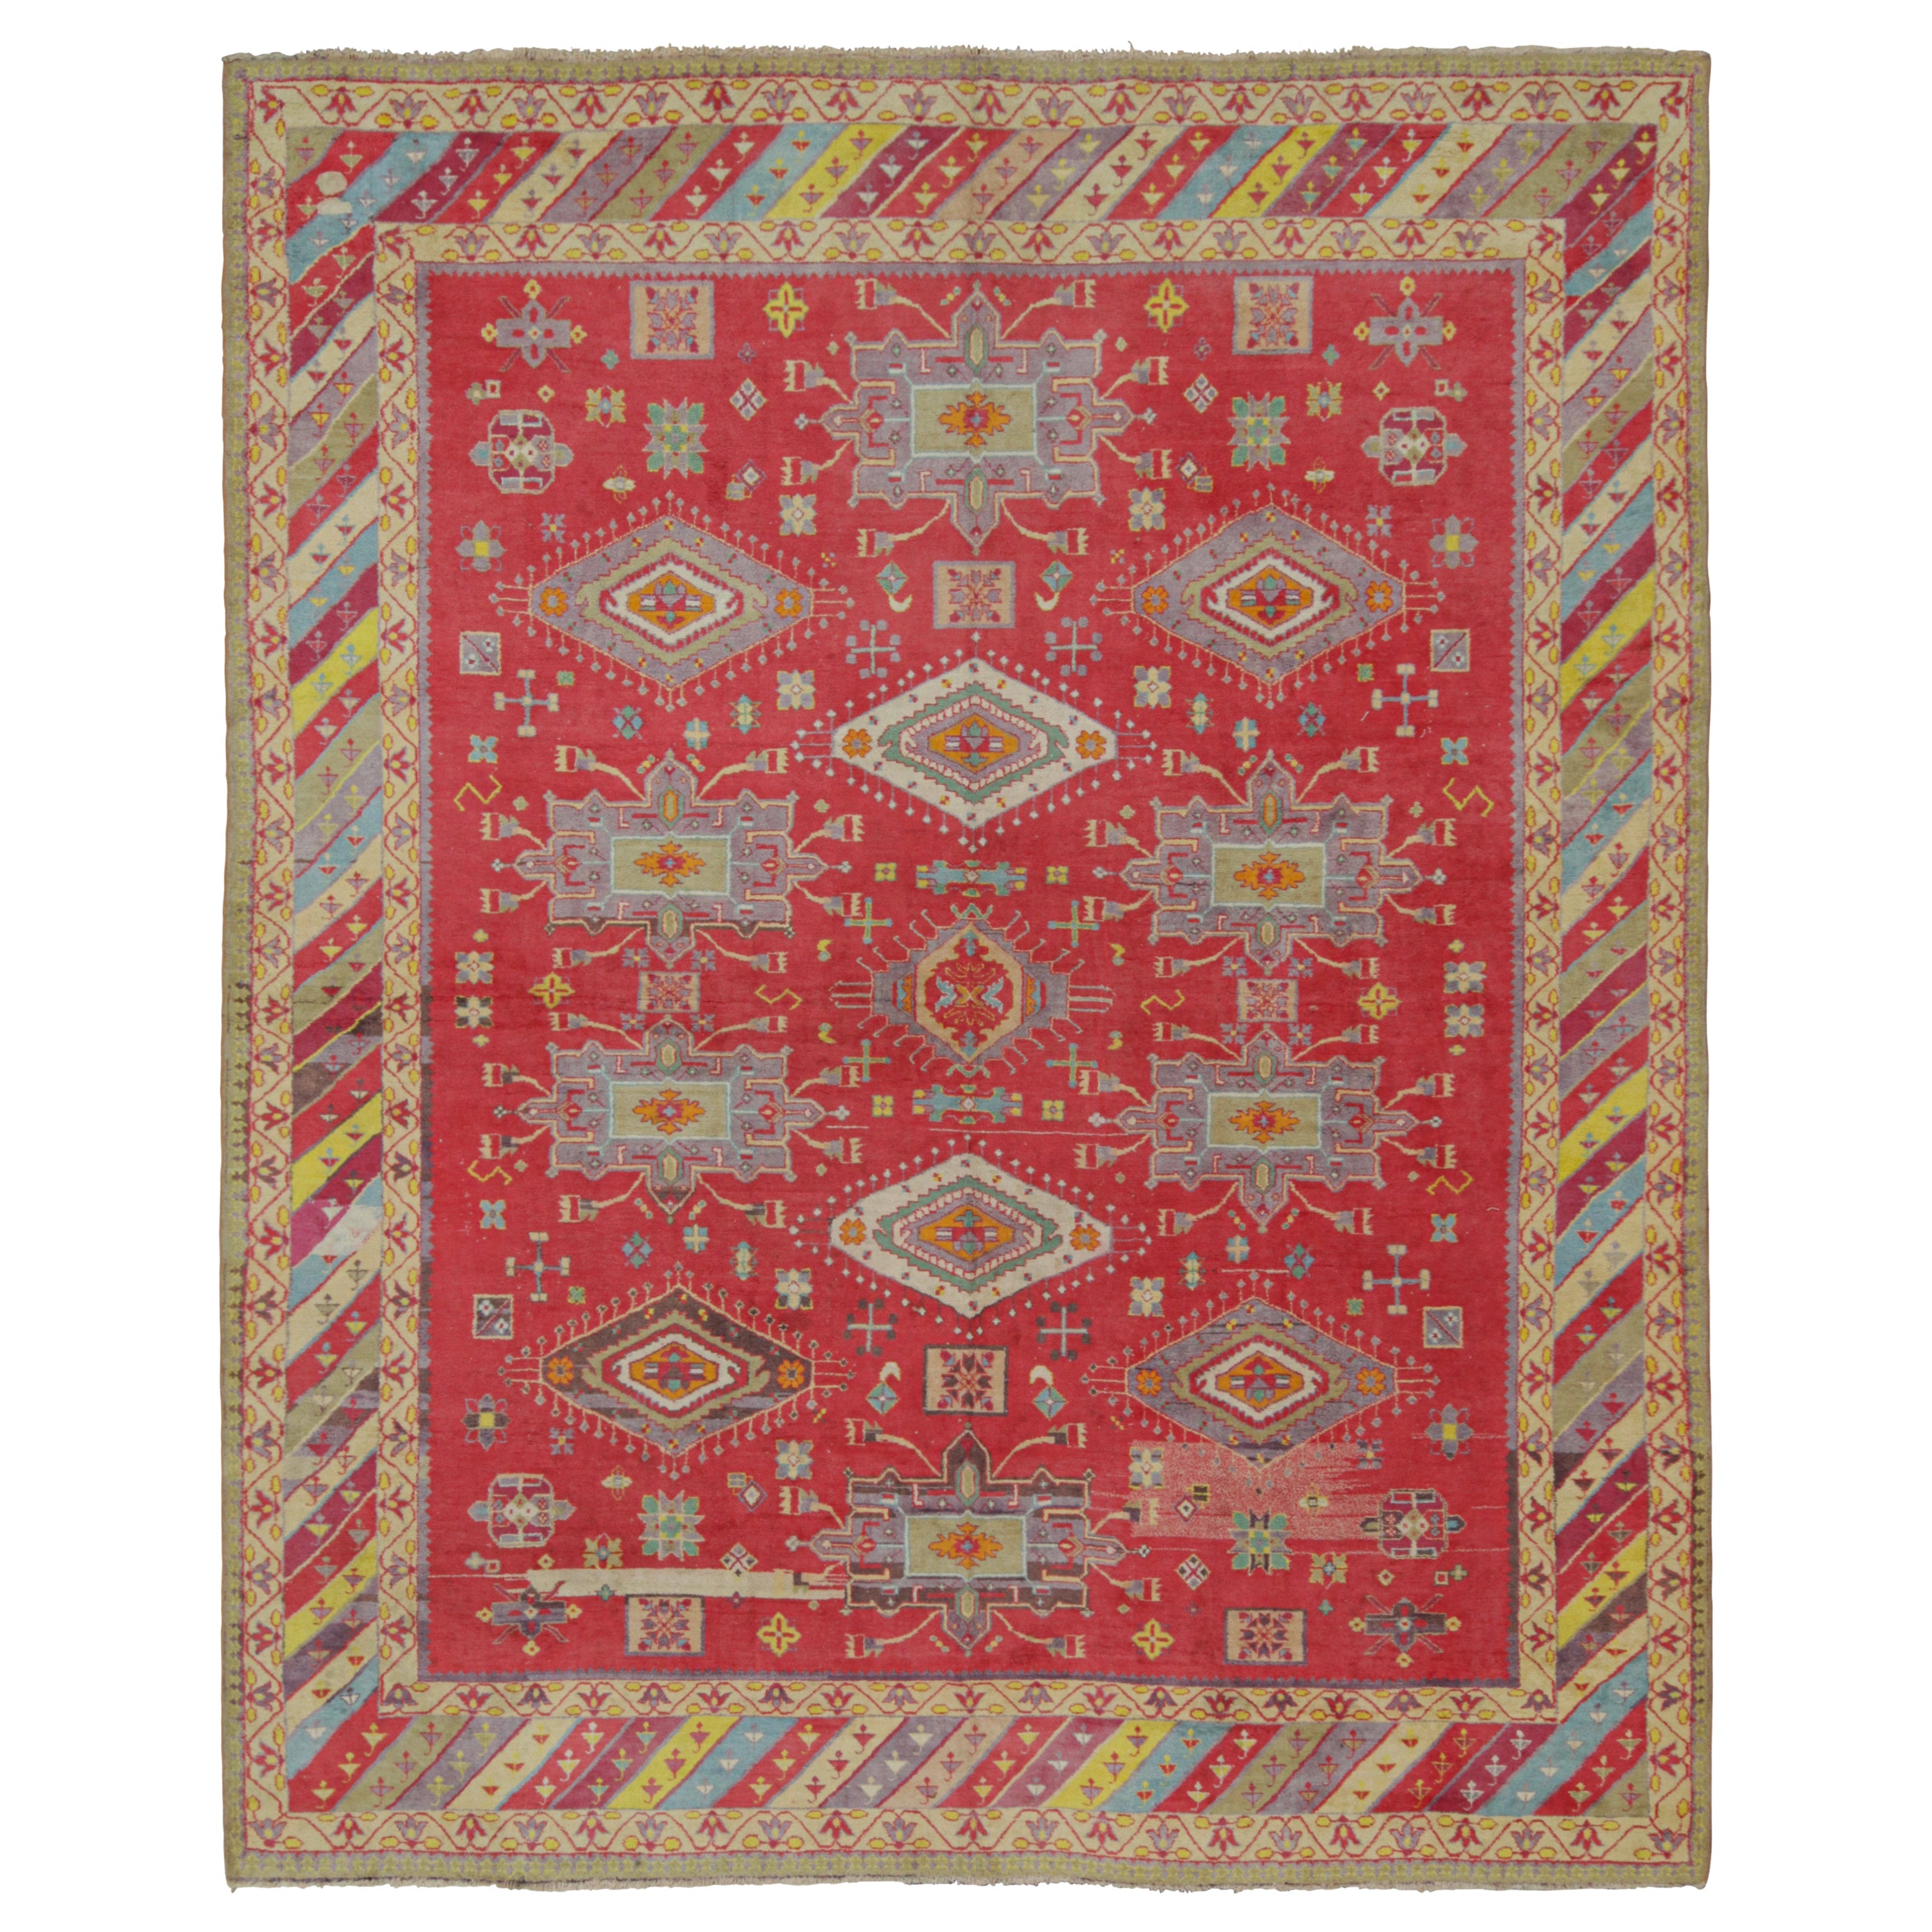 Antiker Agra-Teppich in Rot mit bunten geometrischen Mustern, von Rug & Kilim